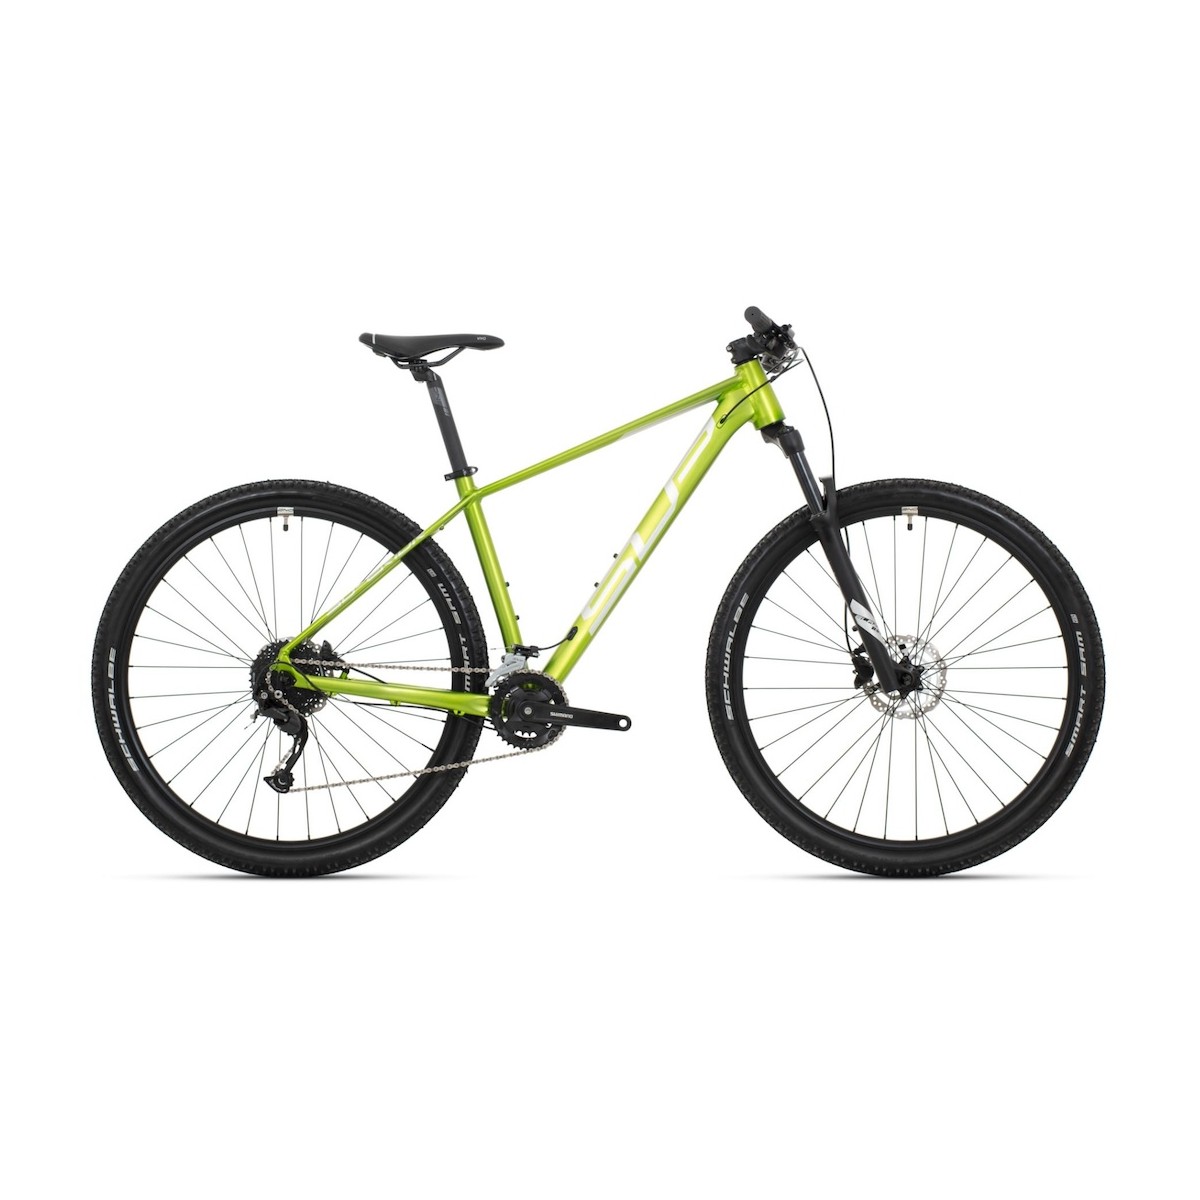 SUPERIOR XC 859 29 mountain bike - lime/silver - 2022